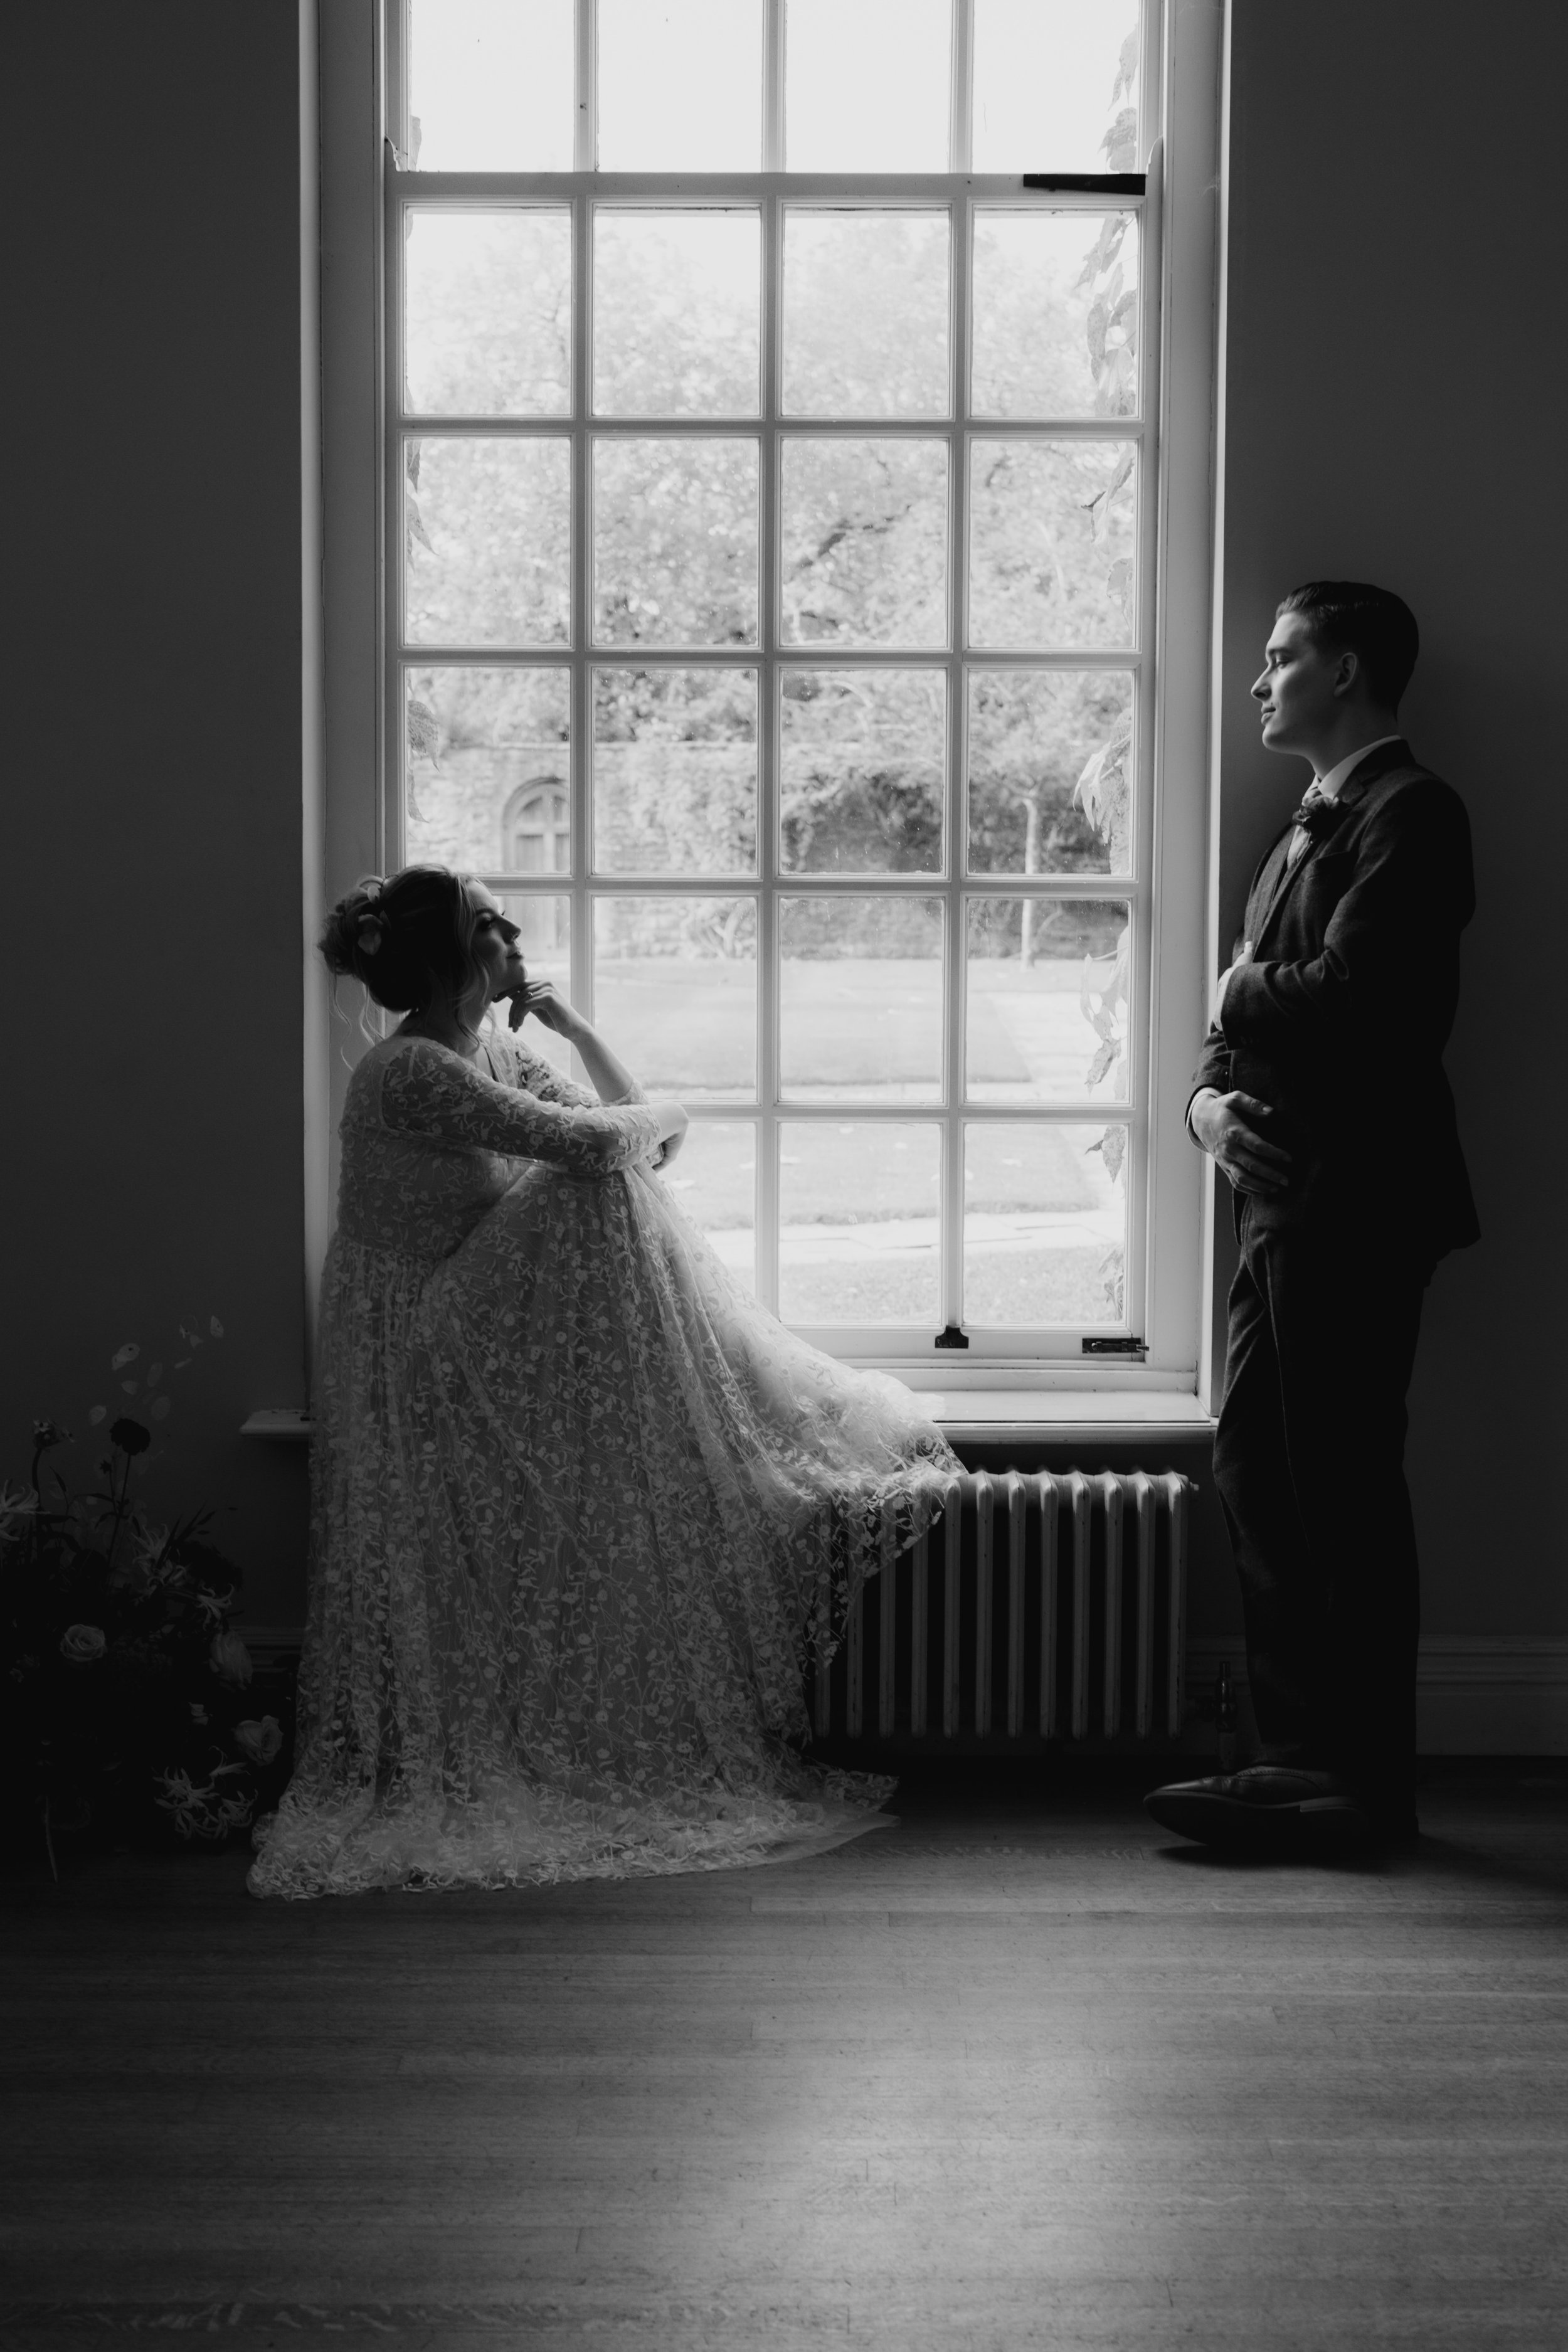 Cornwell Manor Cotswold Wedding Photography